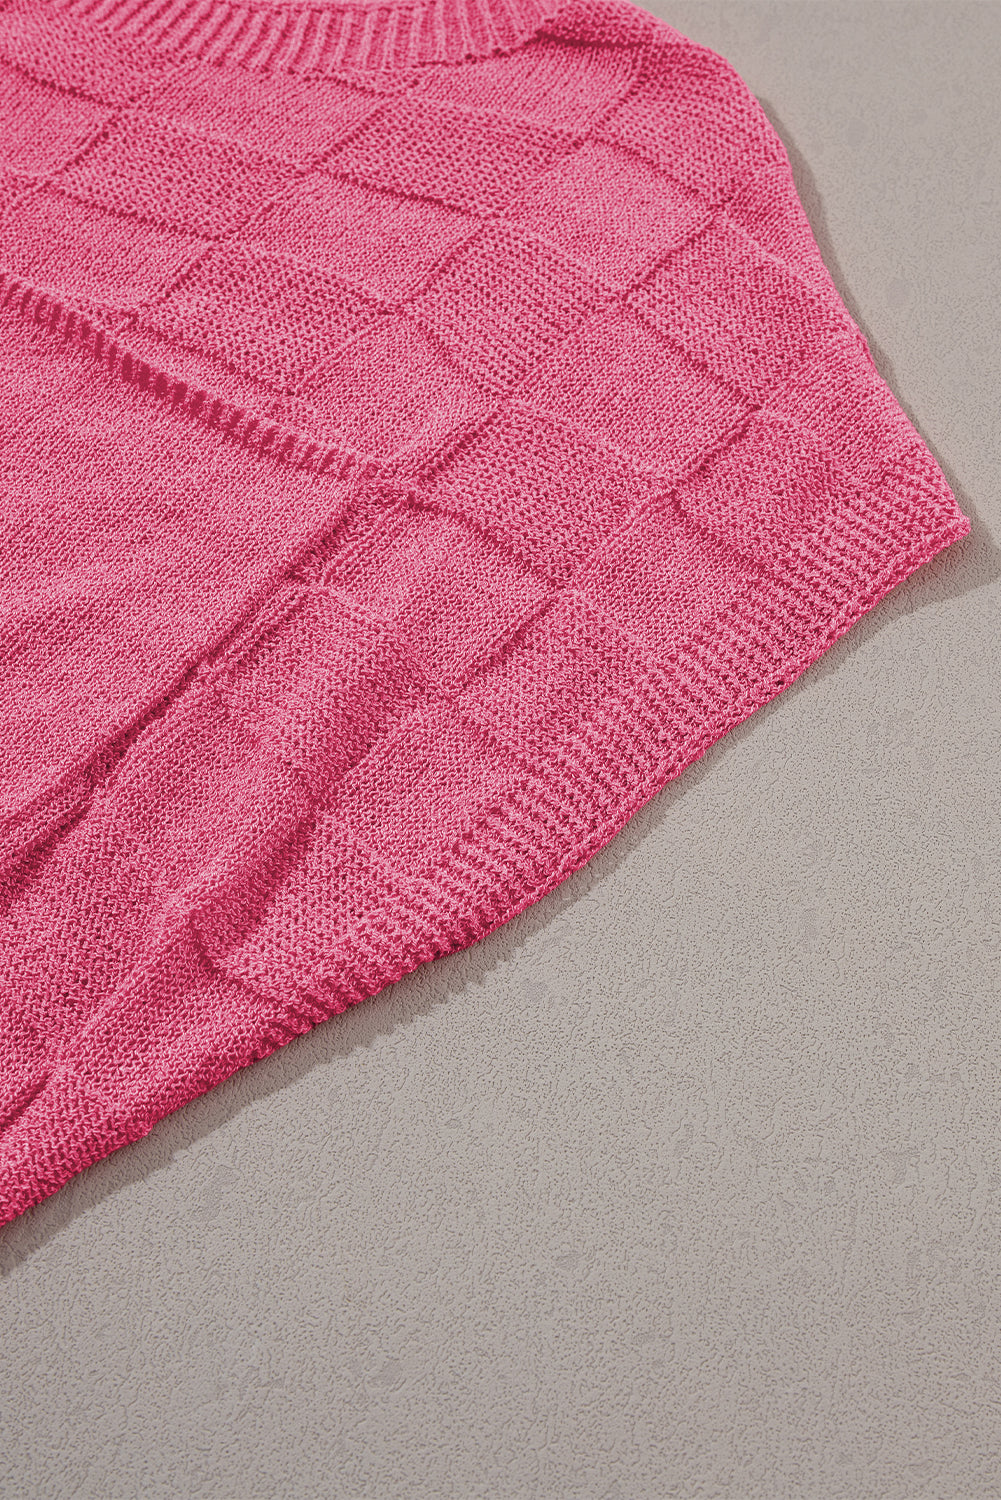 Pull à manches courtes en tricot texturé en treillis rose vif